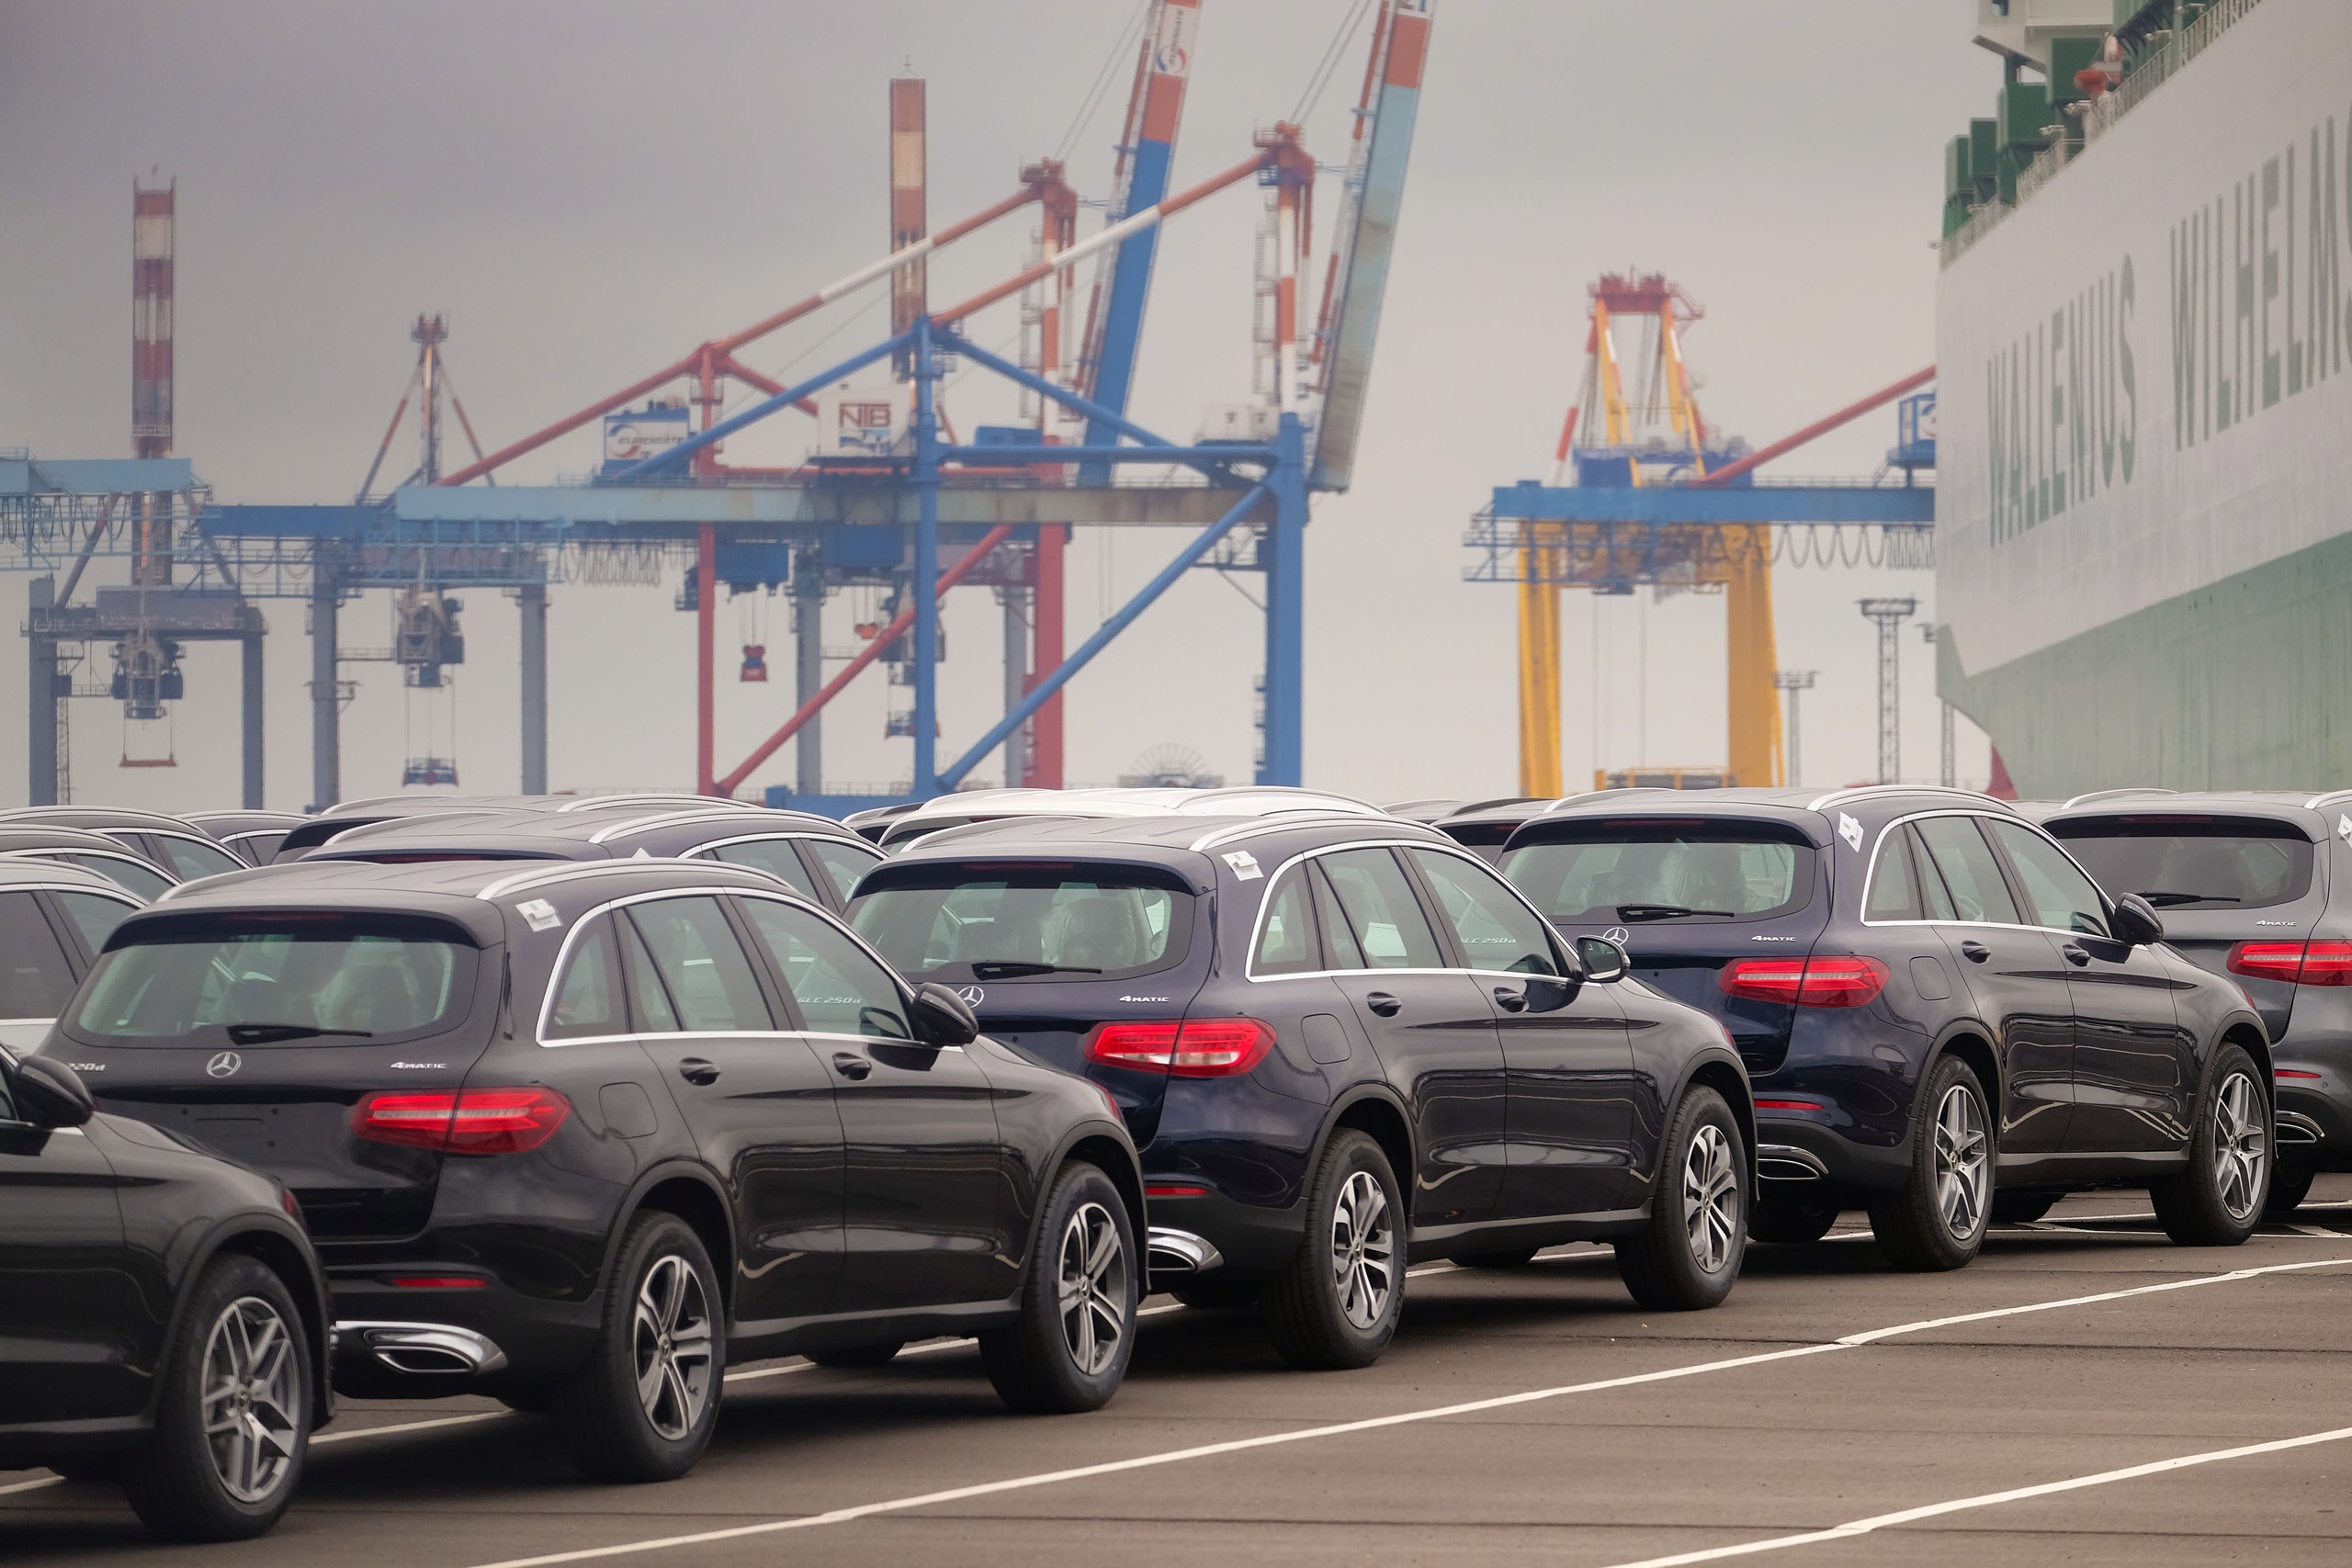 Chuyện gì đây: Cảng biển Châu Âu thành bãi đỗ xe điện của Trung Quốc, hỗn loạn với dòng lũ ô tô giá rẻ ùn tắc ngập các cửa khẩu - Ảnh 4.